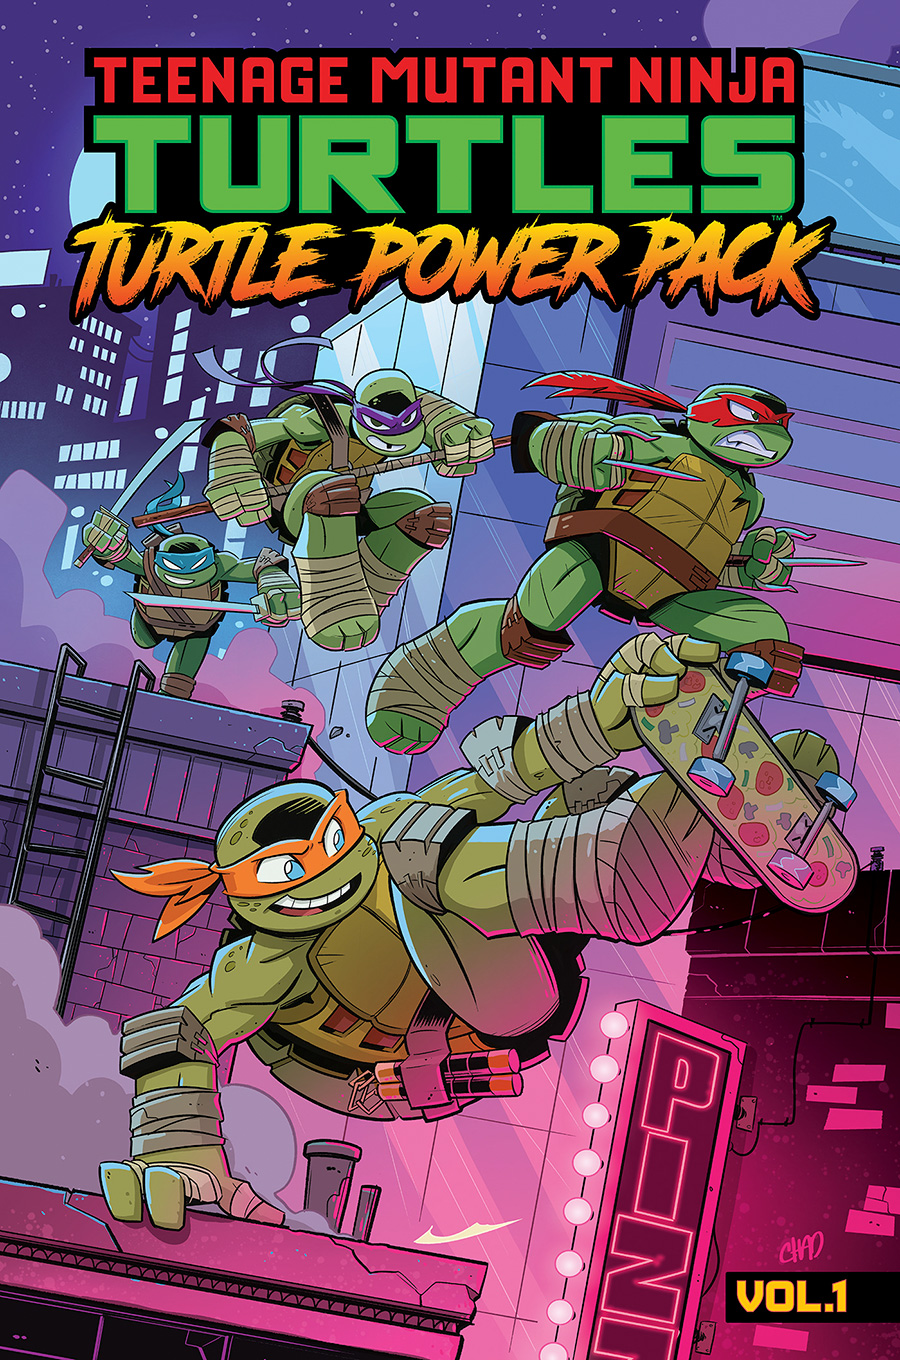 Teenage Mutant Ninja Turtles Turtle Power Pack Vol 1 TP